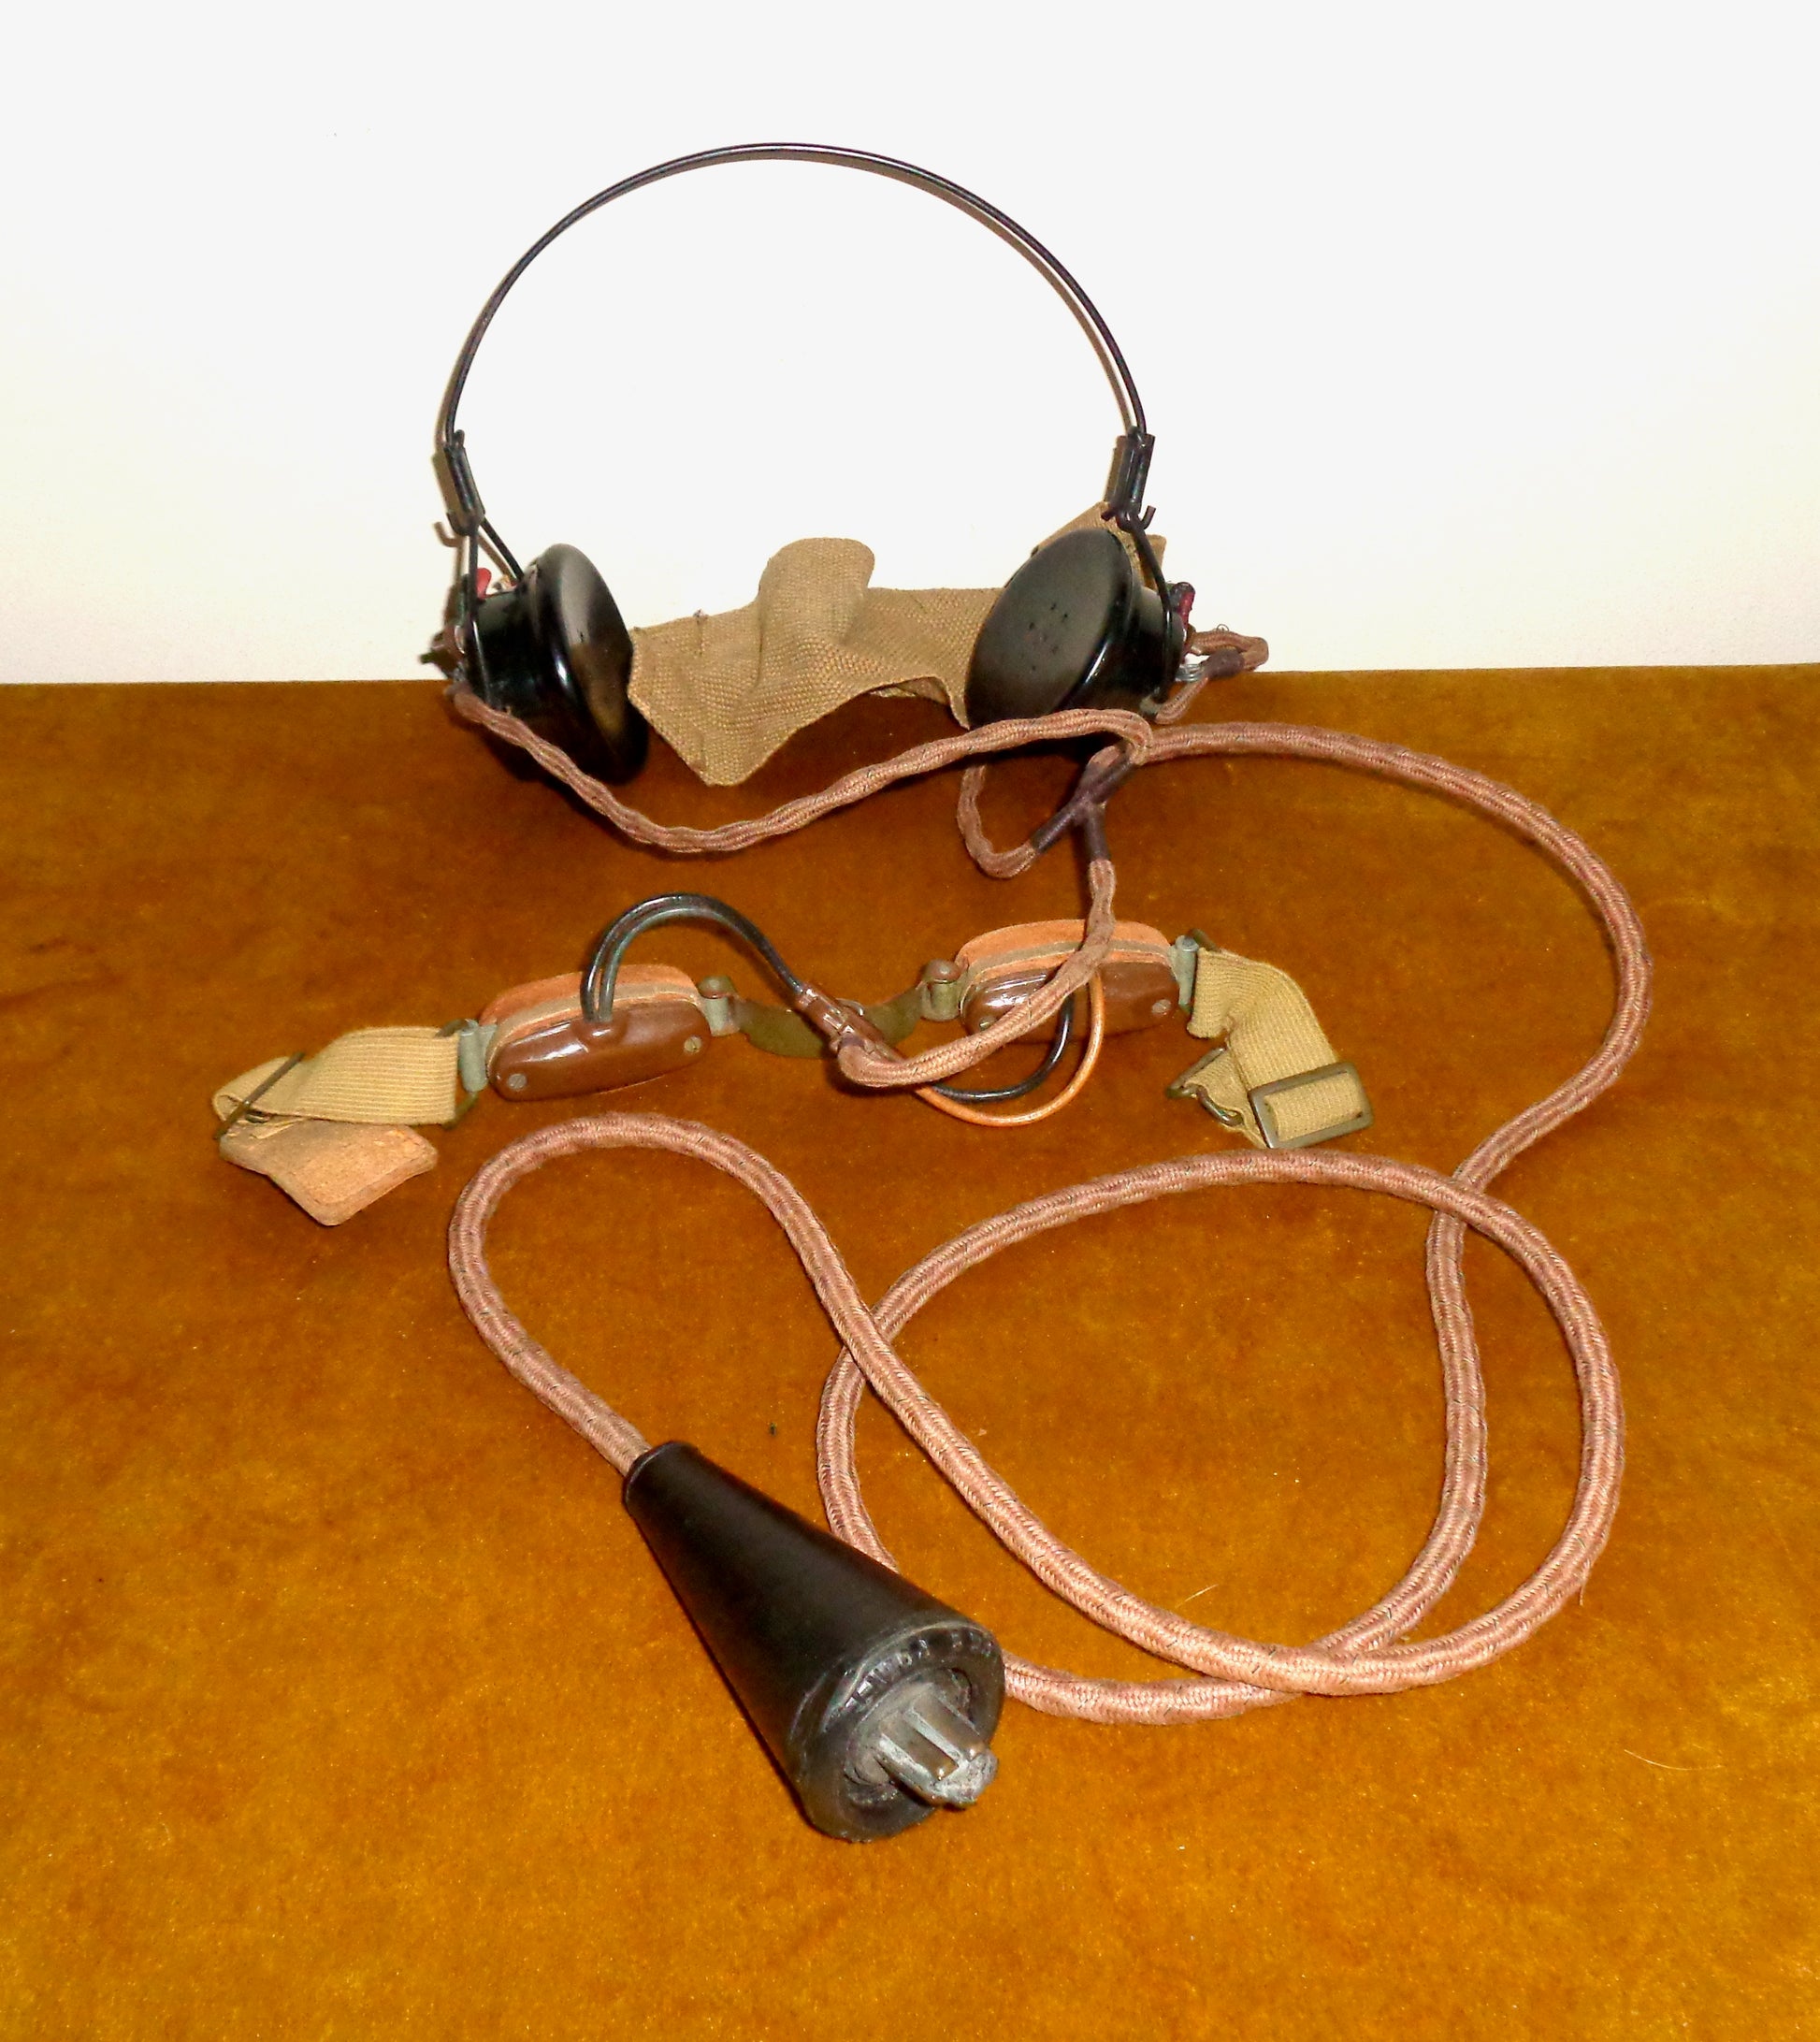 WW2 Wireless Set 46 / WS46 Microphones and receivers headgear no.5 ZA 14307